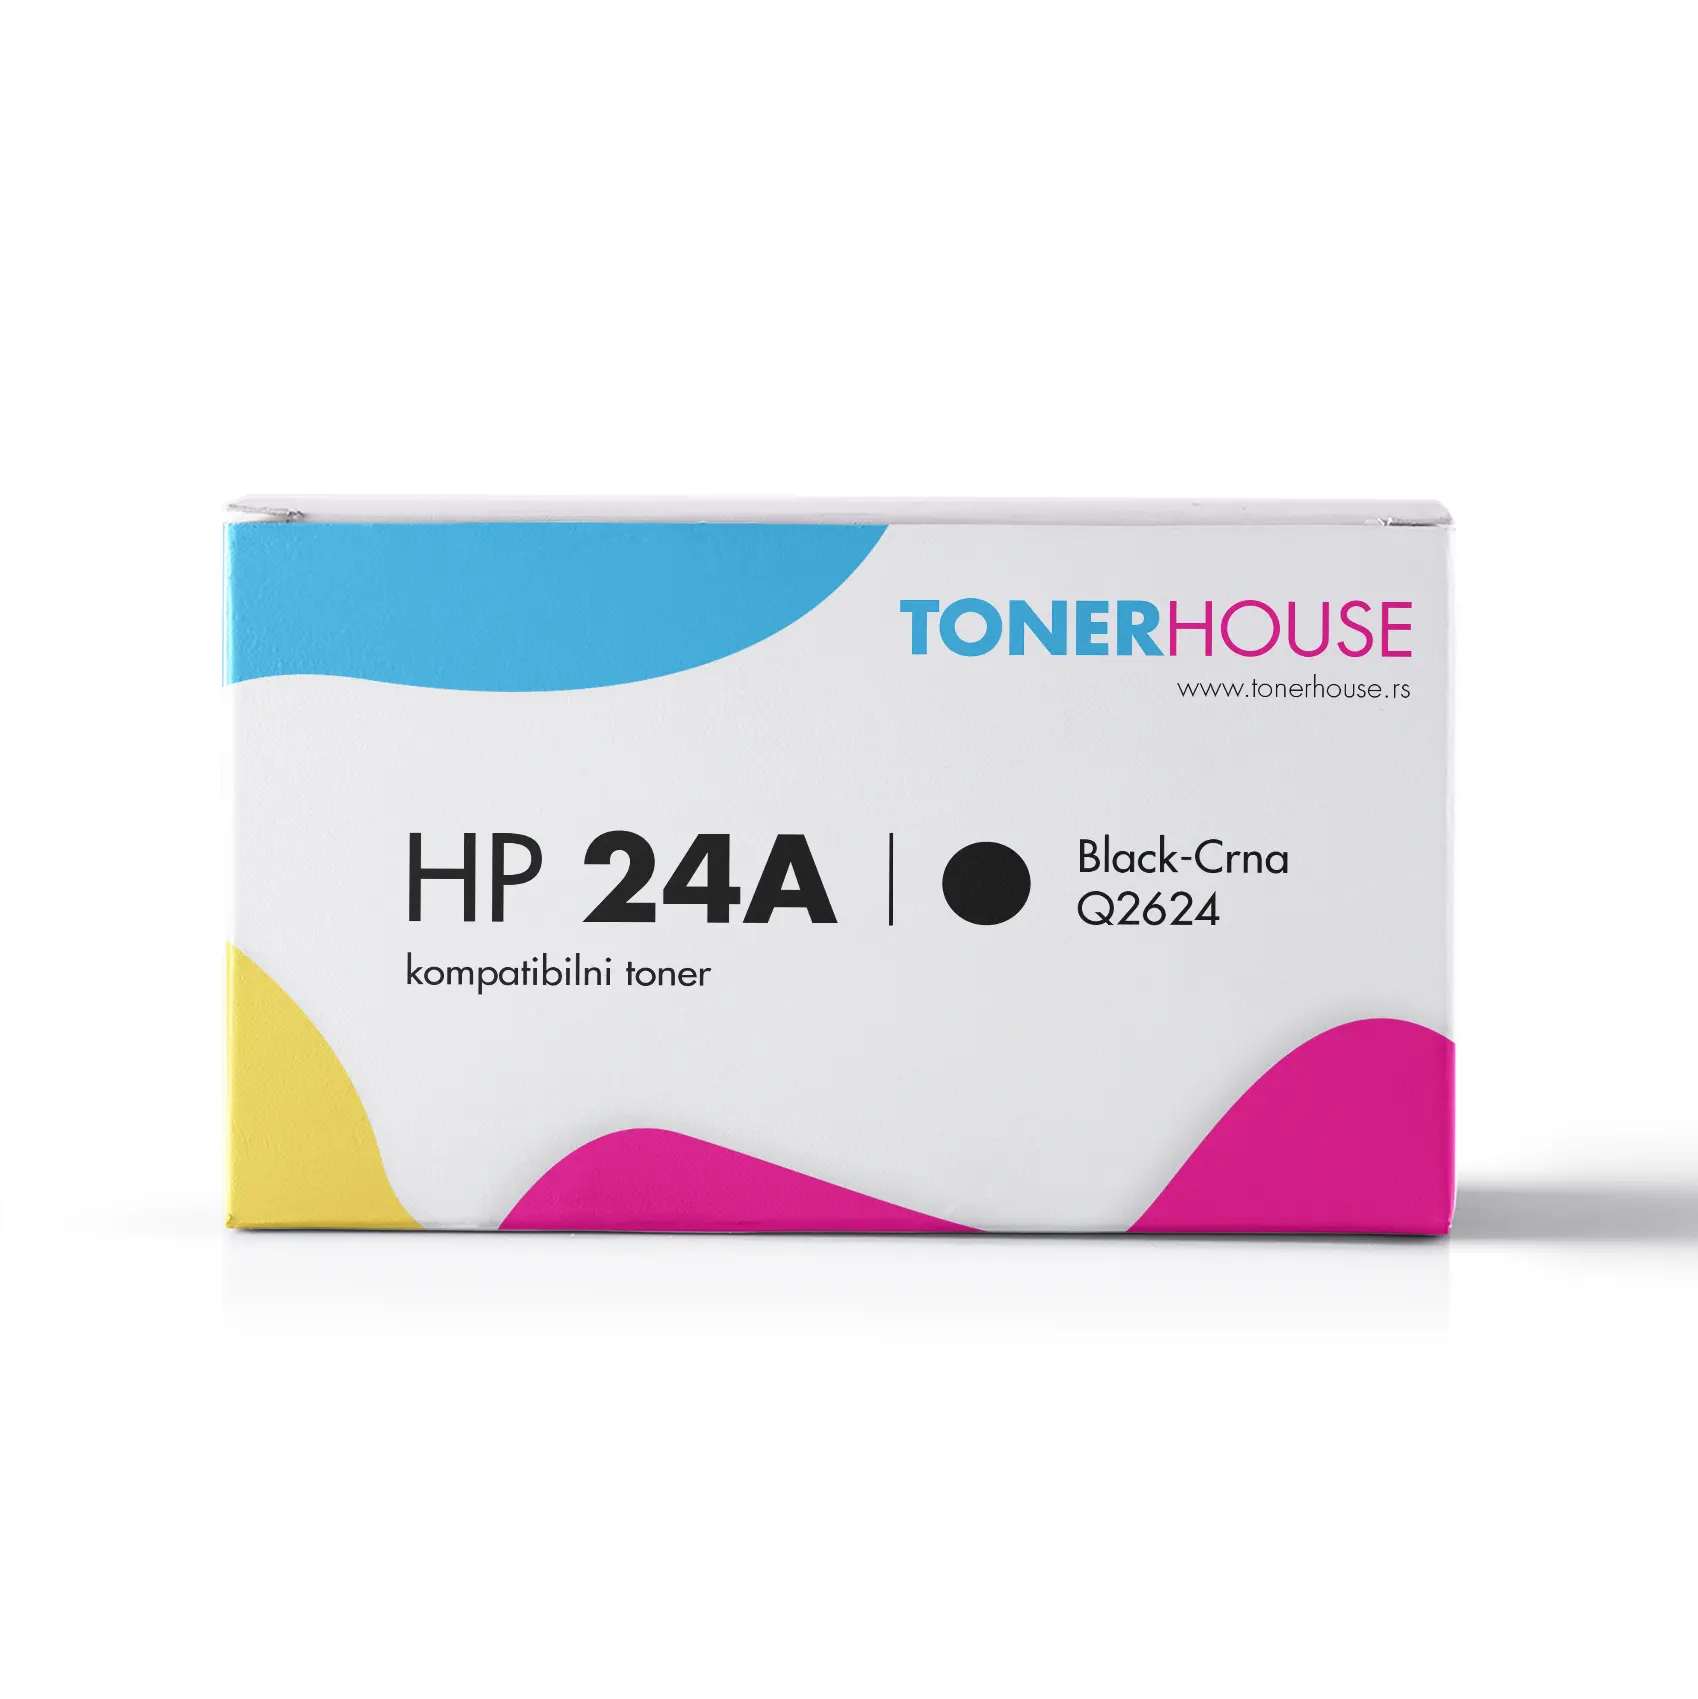 HP 24A Toner Kompatibilni / Q2624A